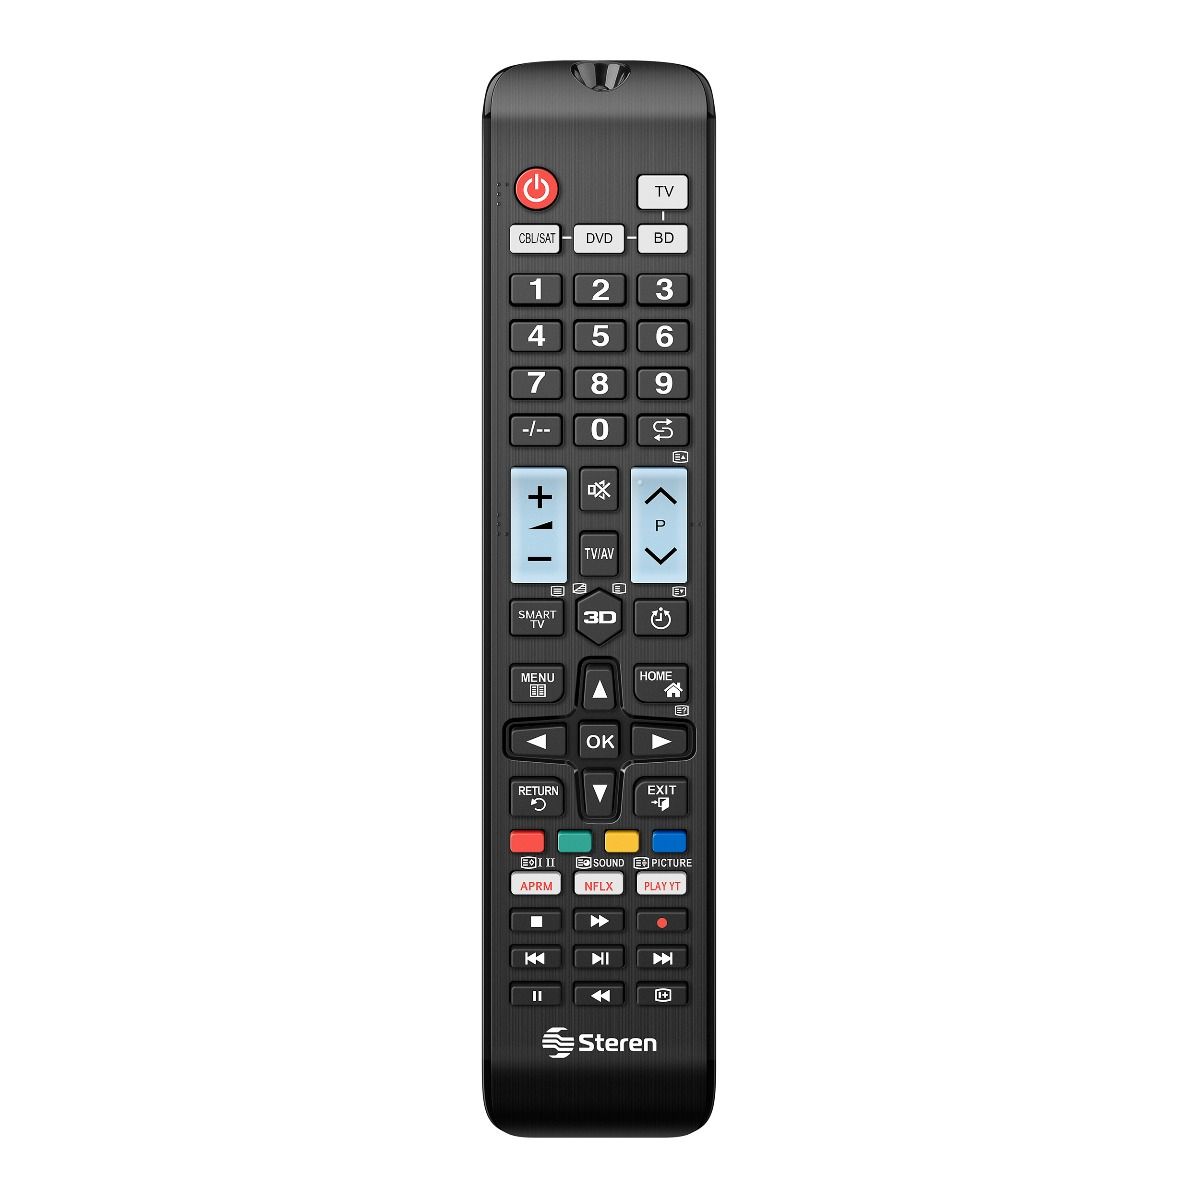 Control Remoto De Reemplazo Universal Compatible Con TV Toshiba E Insignia  TV/Smart TV Edition Sin Batería (Sin Función De Voz)